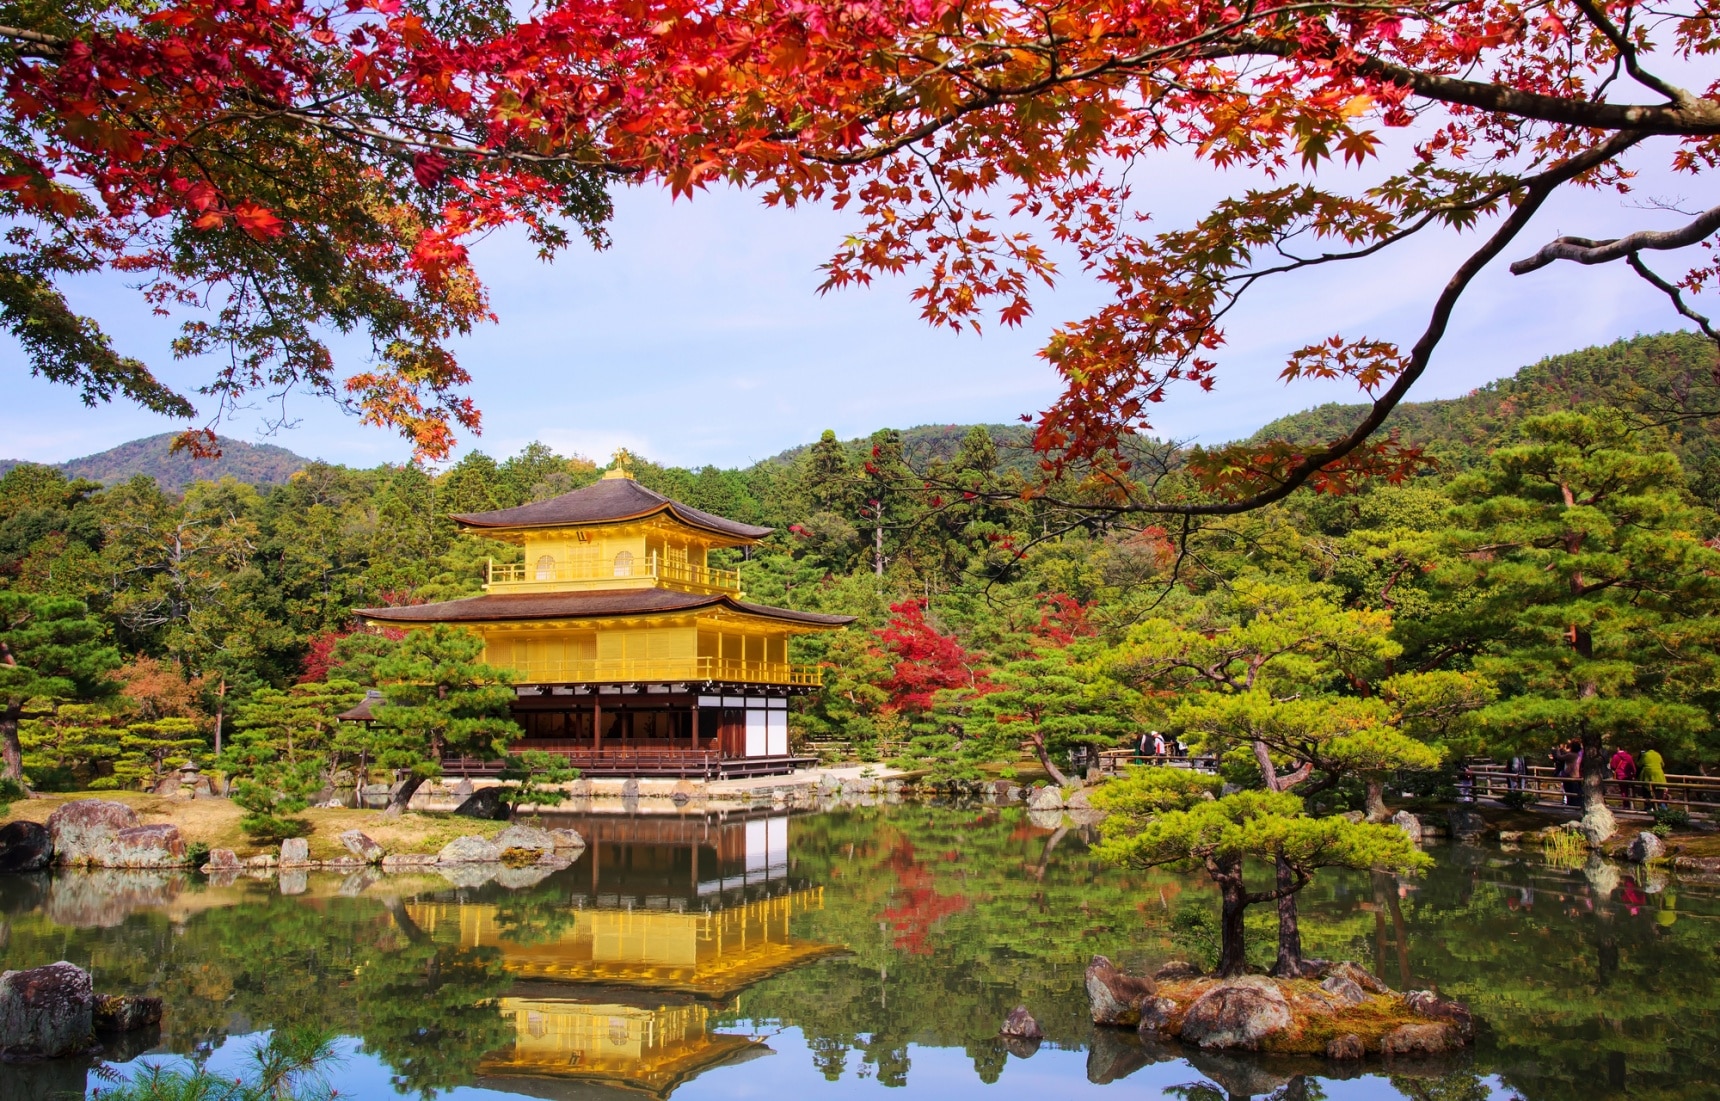 经过千百次锤炼的榜单 京都红叶景点top5 All About Japan